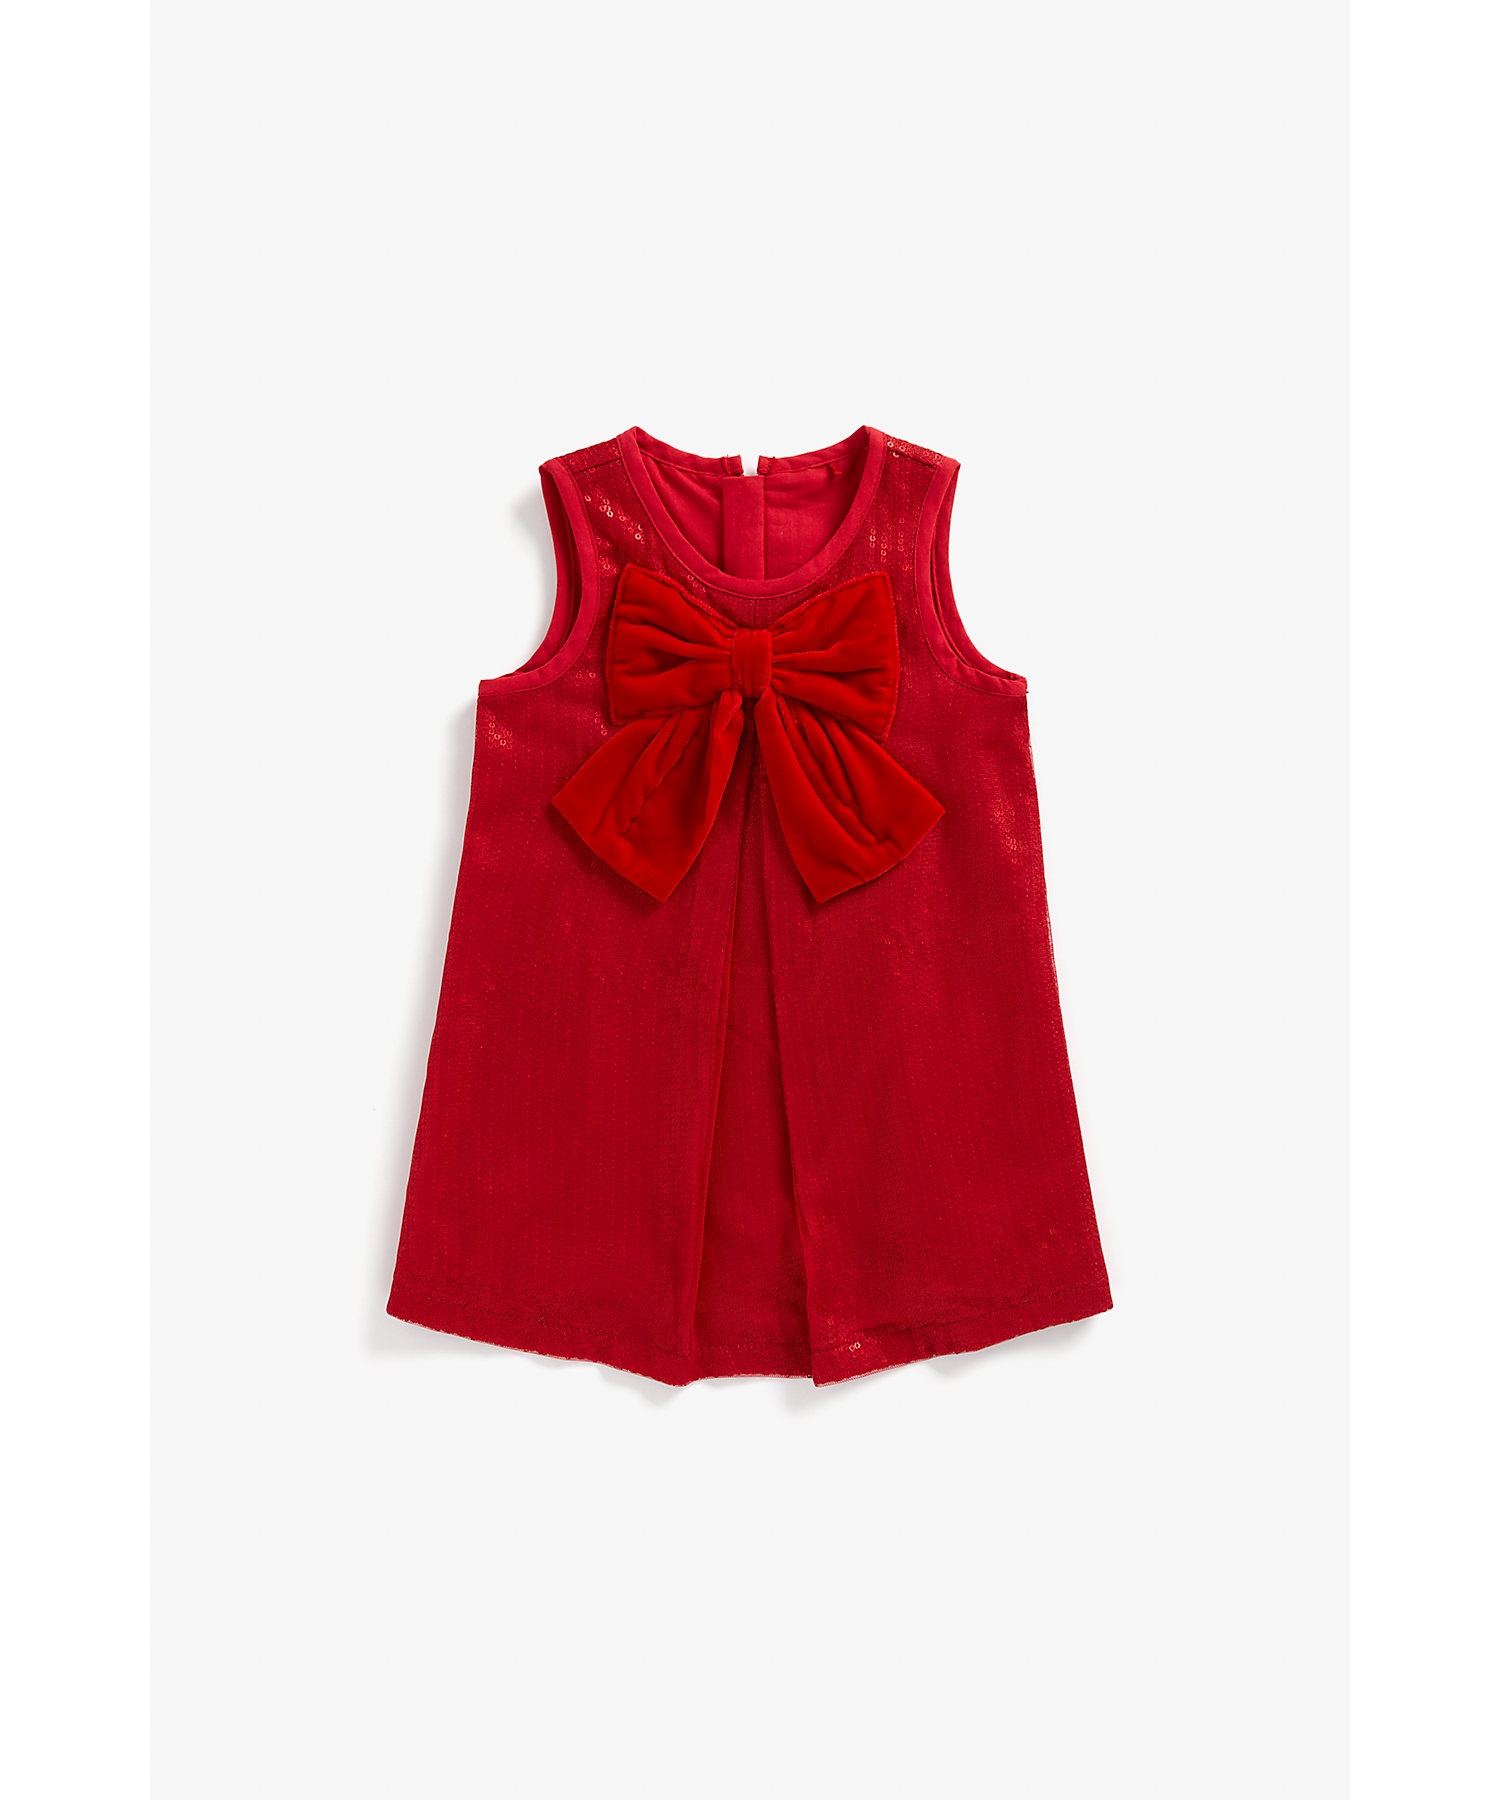 Girls Sleeveless Dress Bow Design-Red